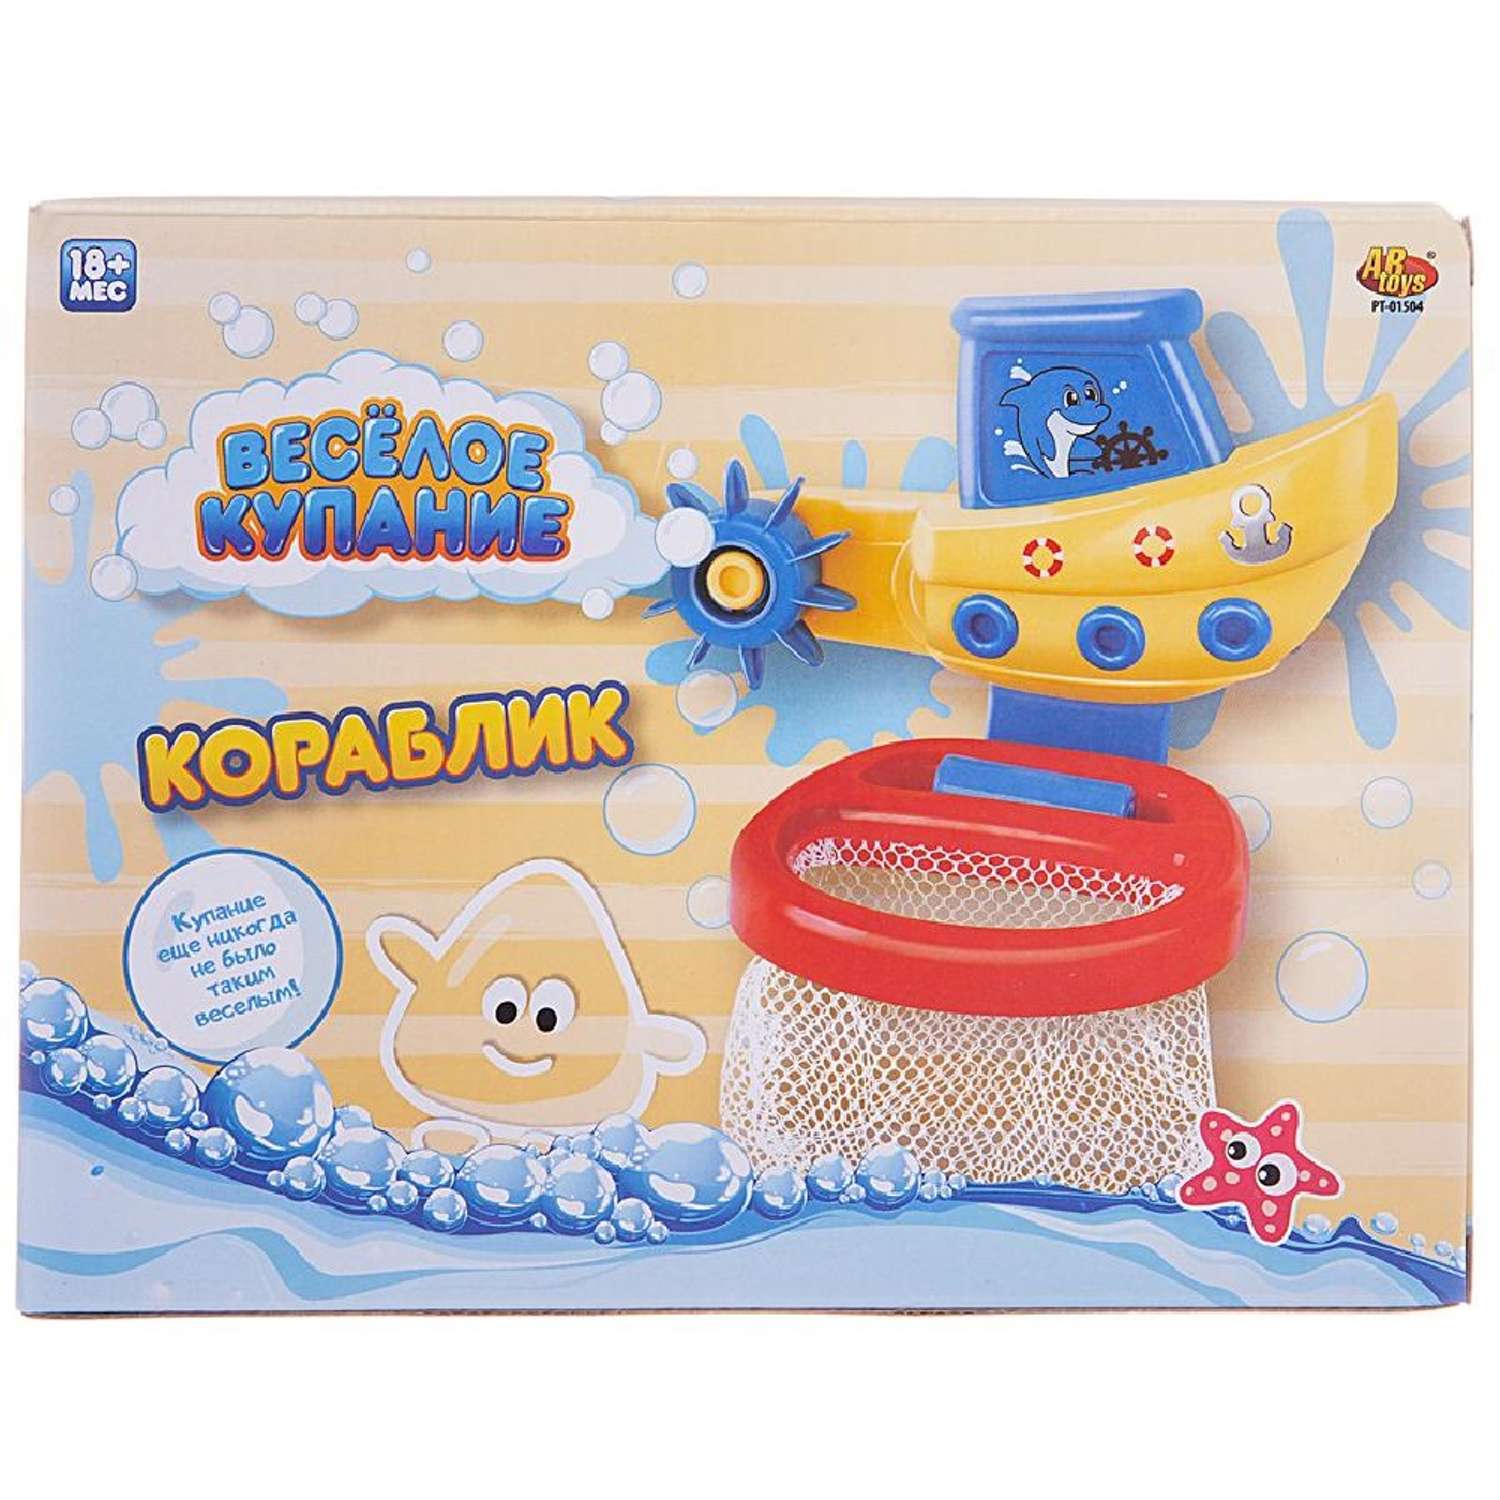 Набор игрушек для ванной ABtoys Кораблик с корзиной и 3 мячиками для водного баскетбола - фото 1